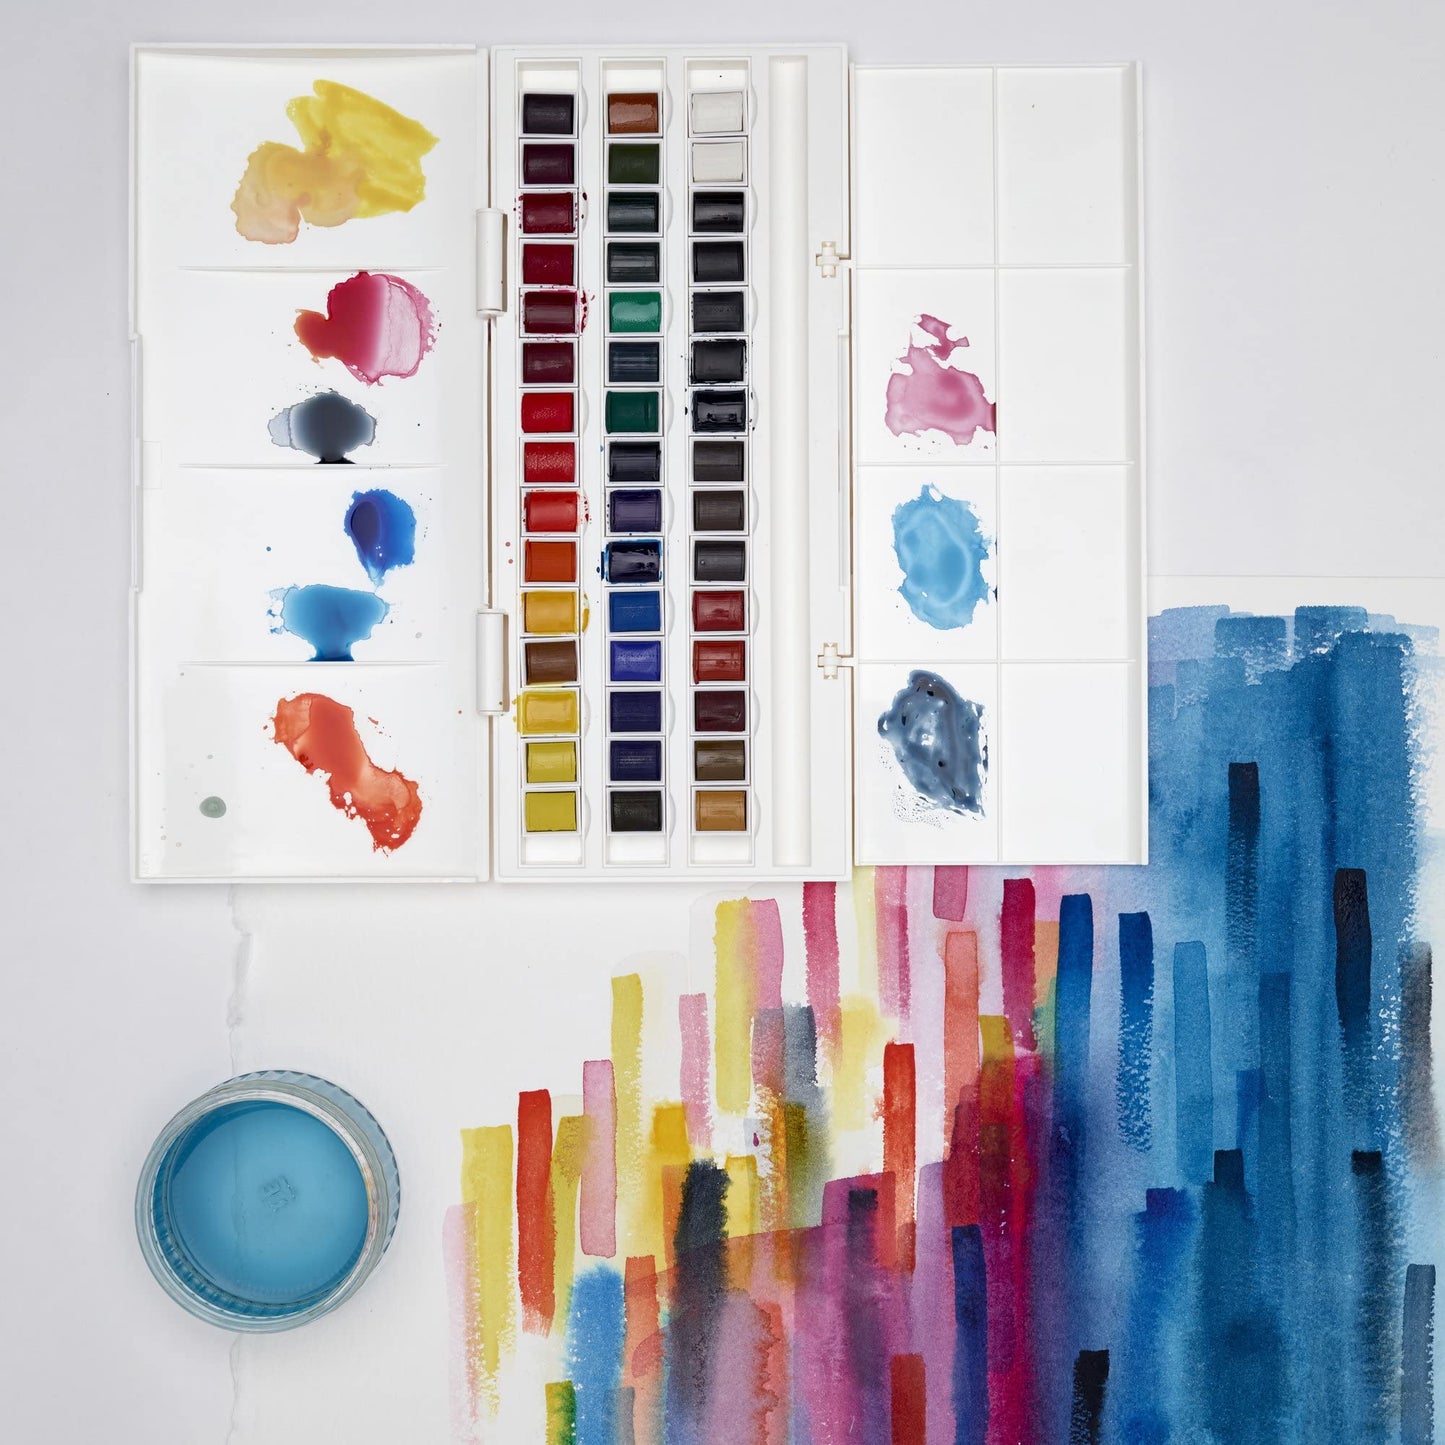 Winsor & Newton Cotman Watercolor Paint Set, Studio Set, 45 Half Pans w/ Brush